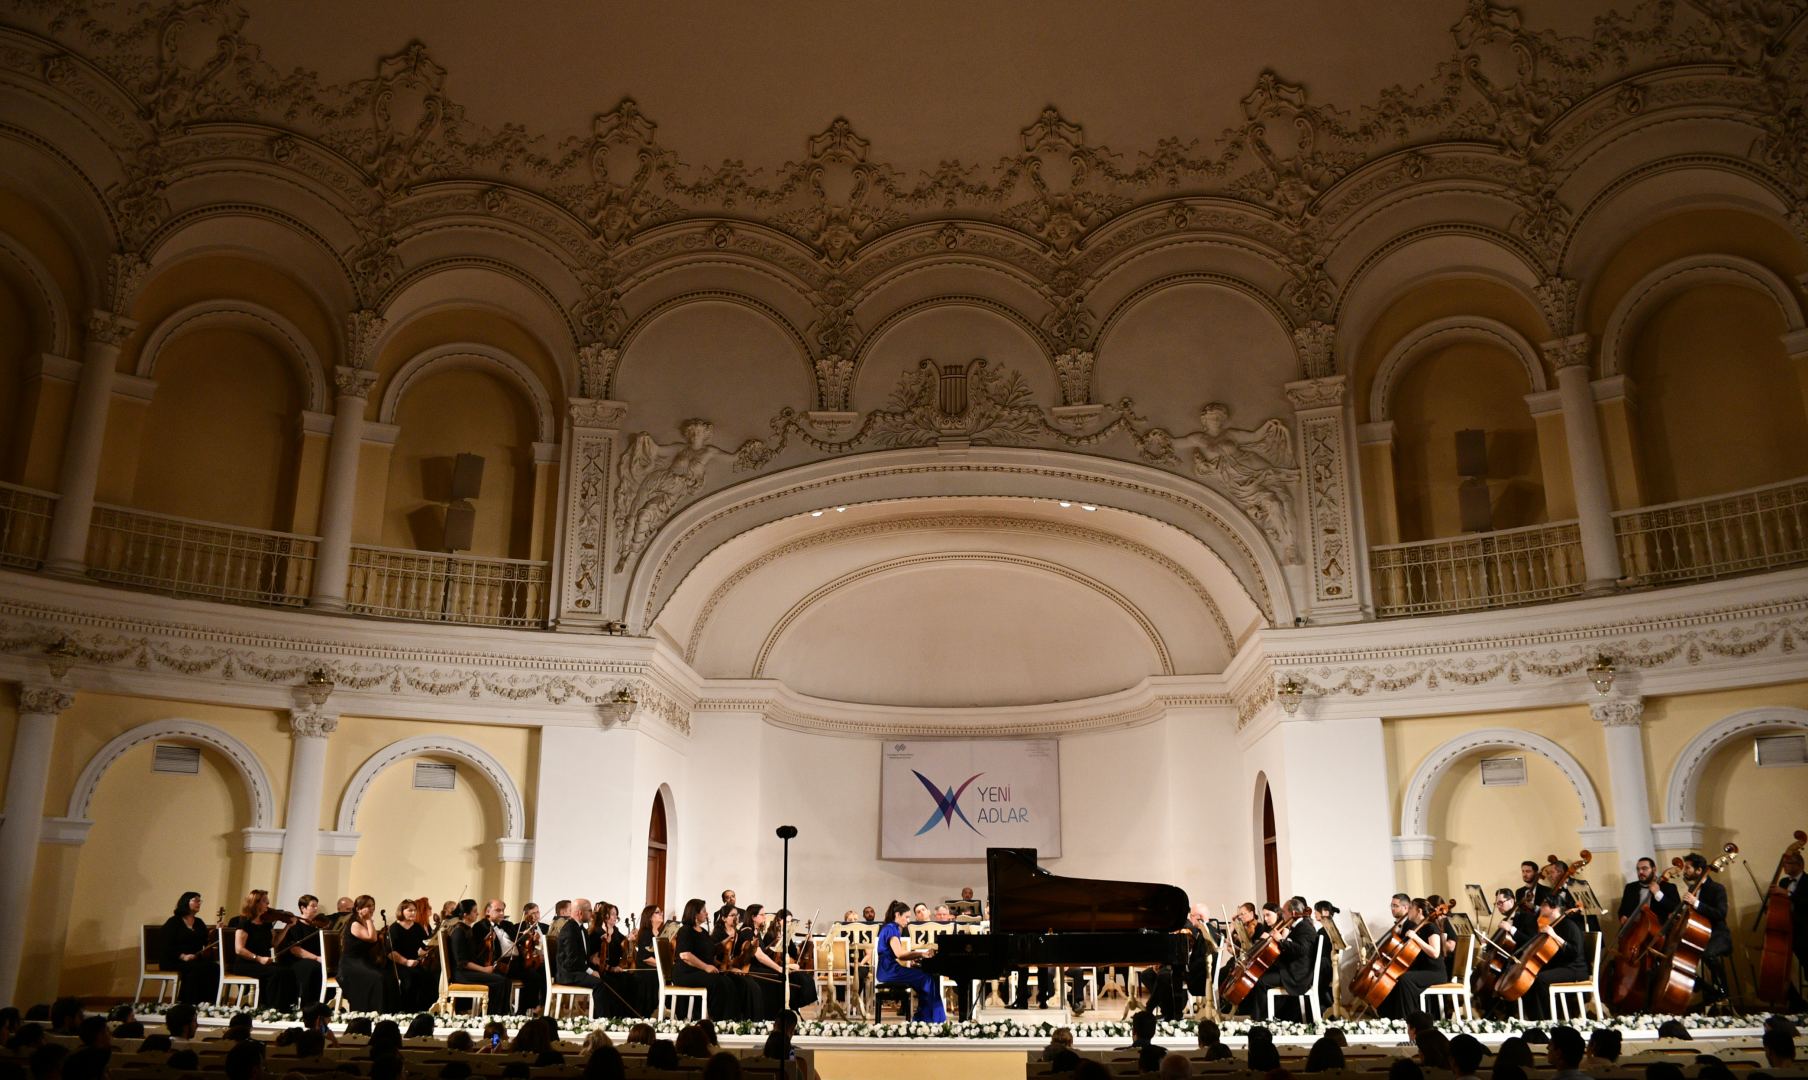 Мир прекрасной музыки, чистого звучания и талантливого исполнения – концерт в рамках проекта "Yeni adlar" в Баку (ФОТО)